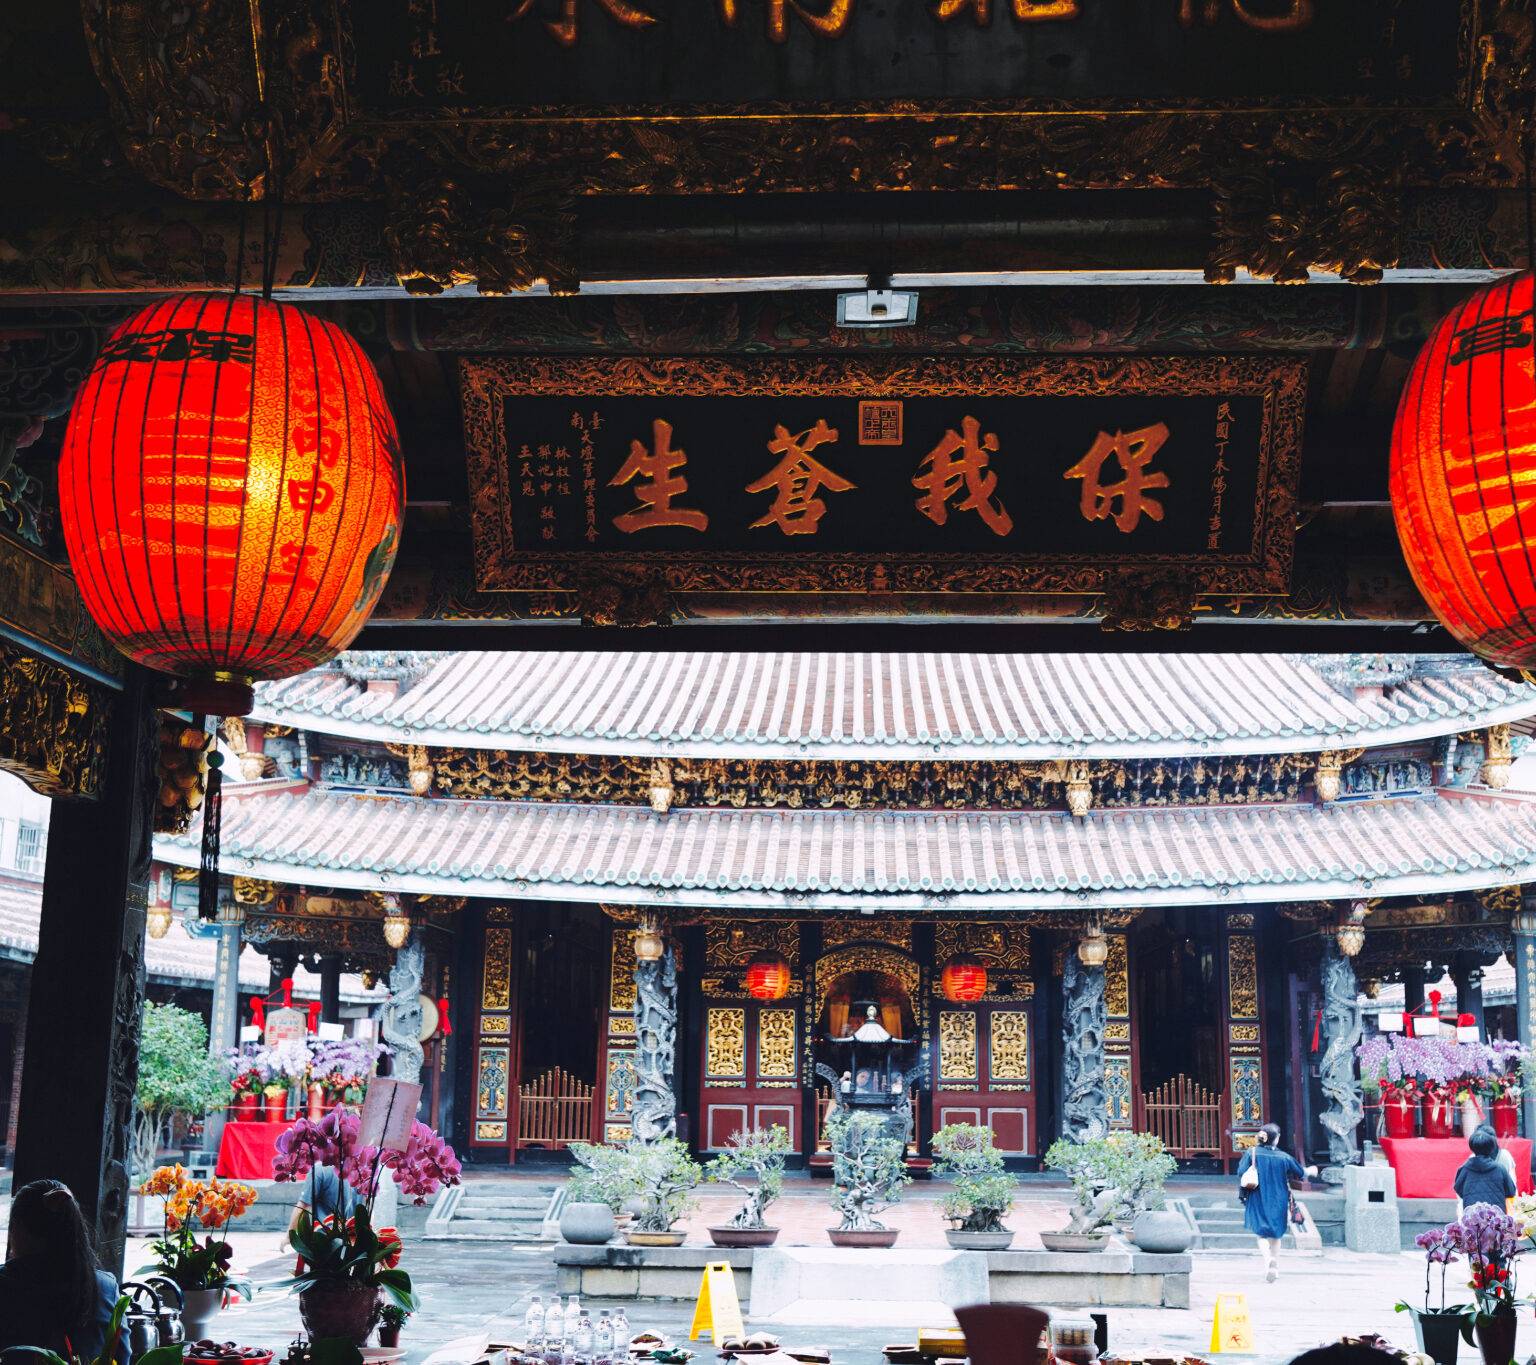 Der Eingang des Bao'an Tempels mit roten Lampions an der Decke.